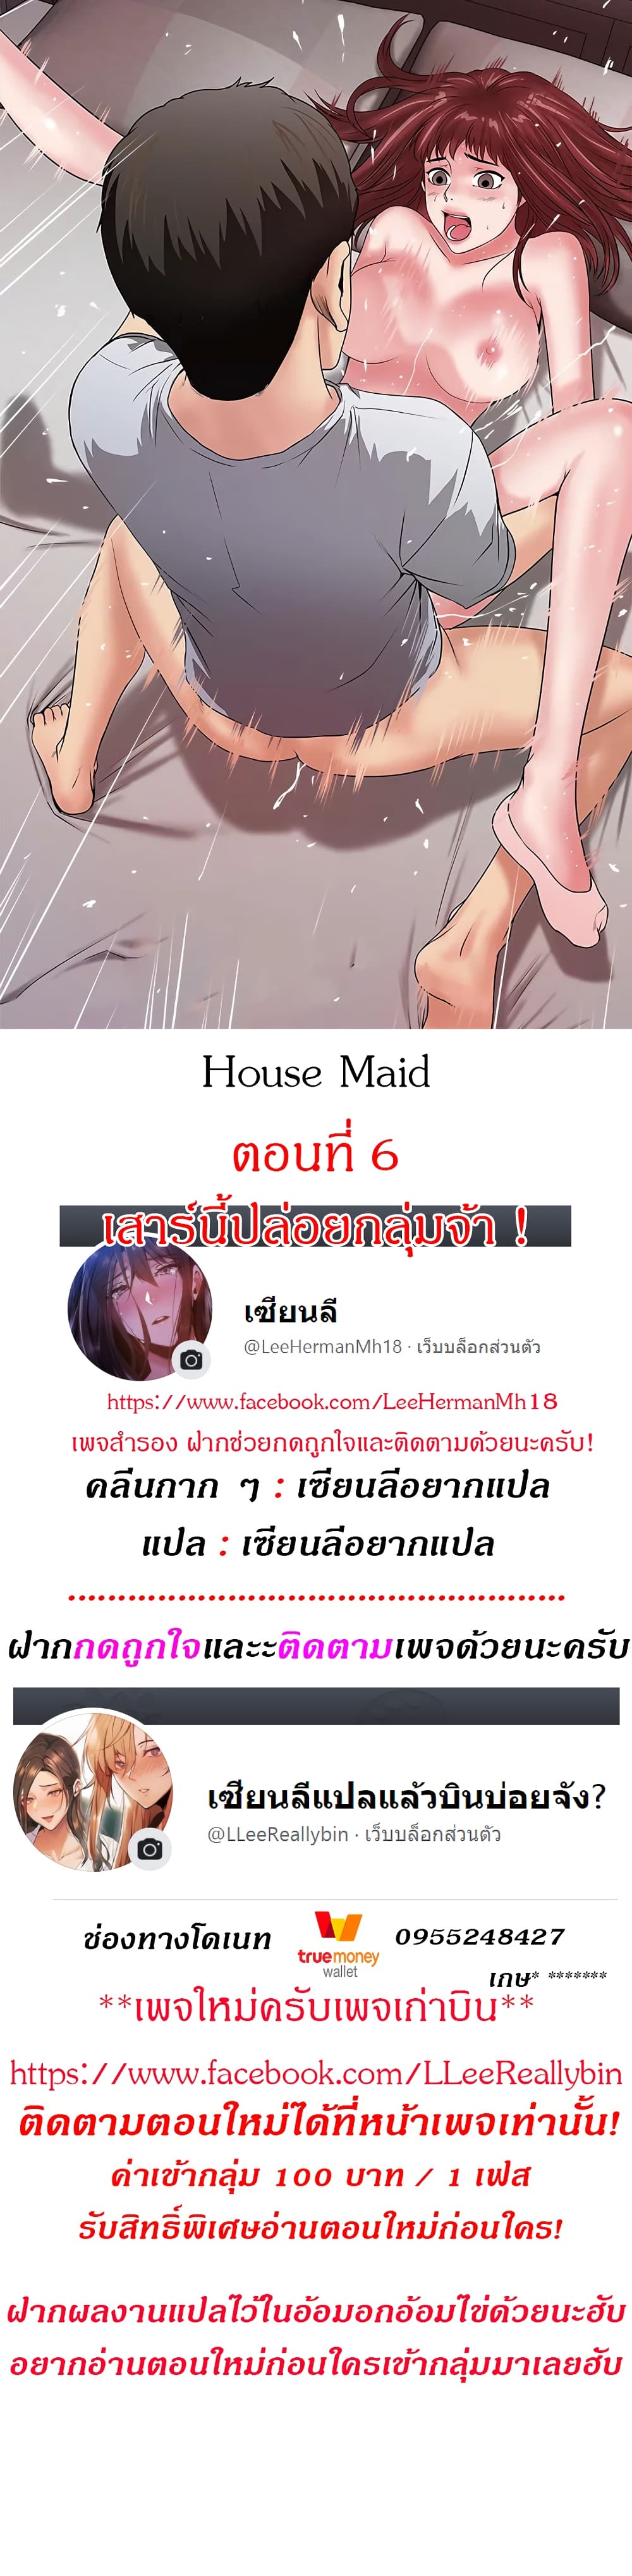 House Maid 6 (1)